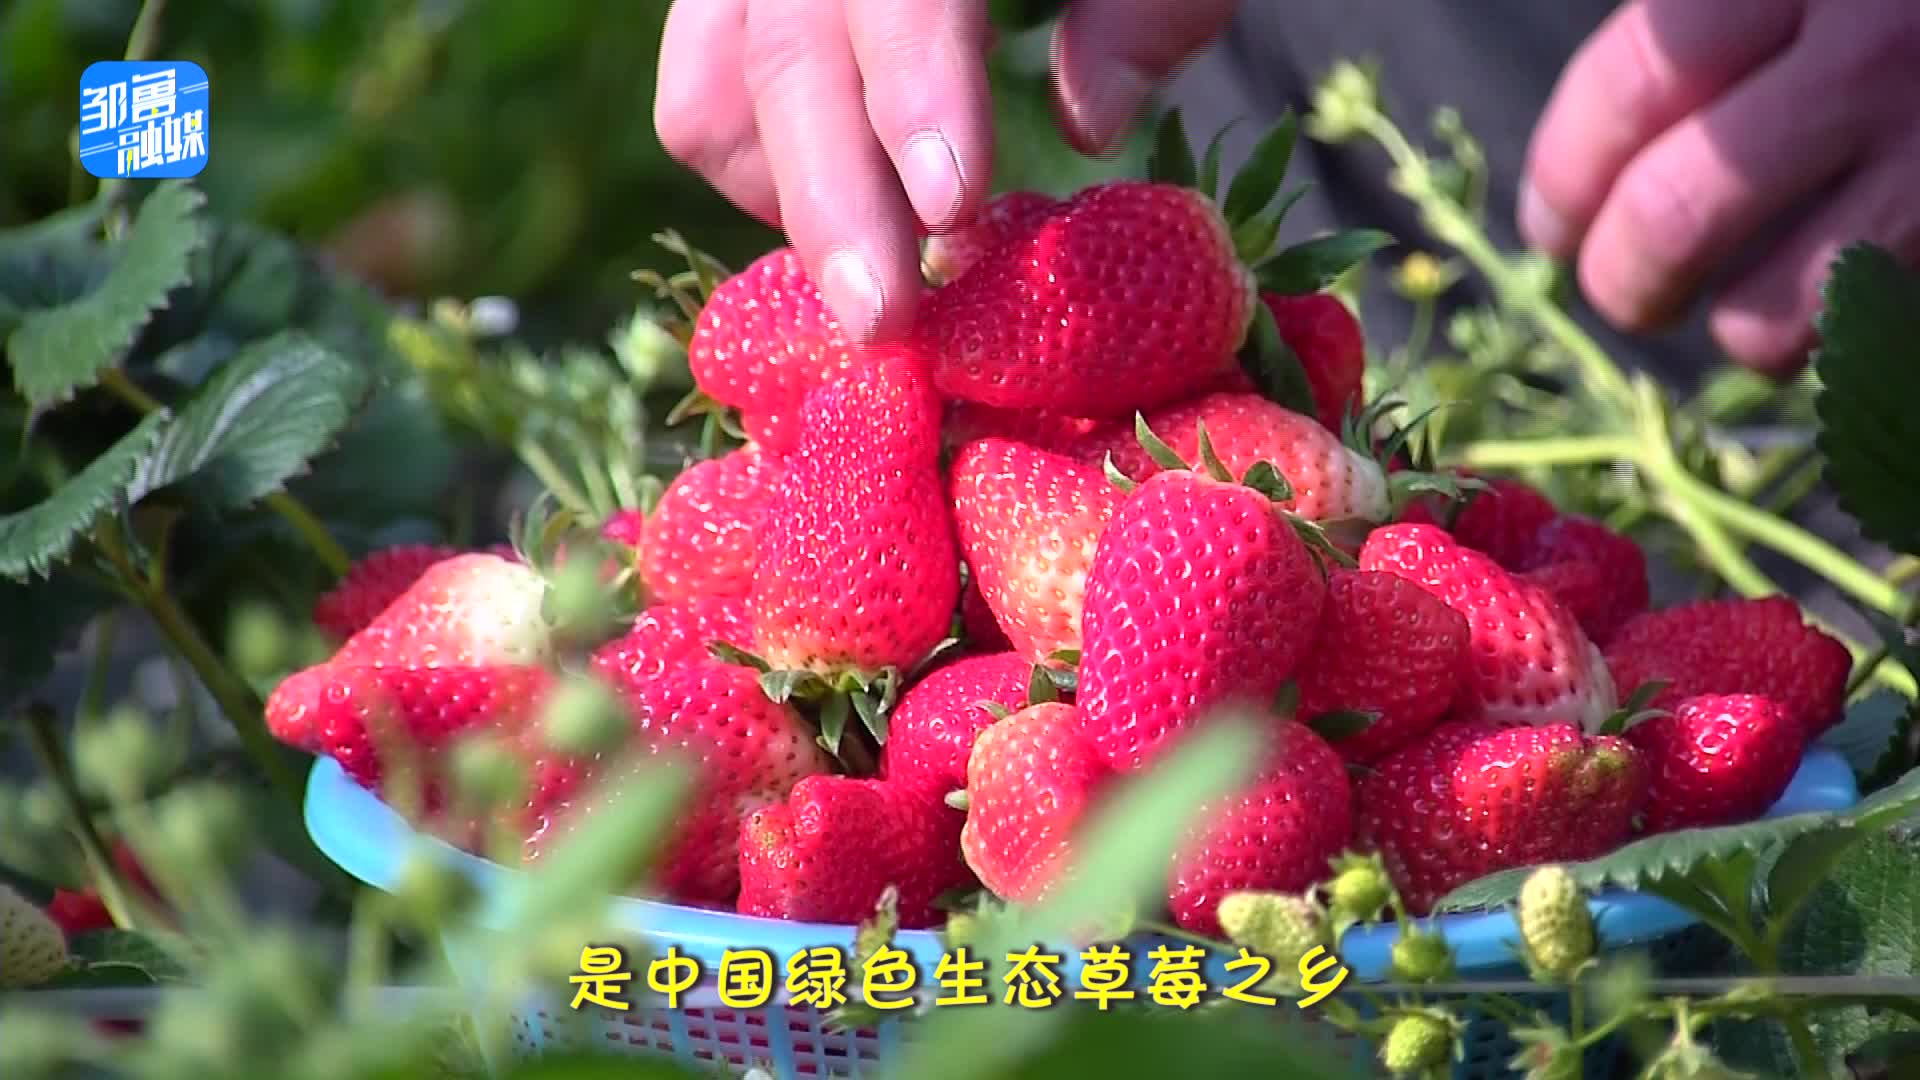 【邹视频·新闻】56秒 | 邹城特色农产品——中心店镇草莓